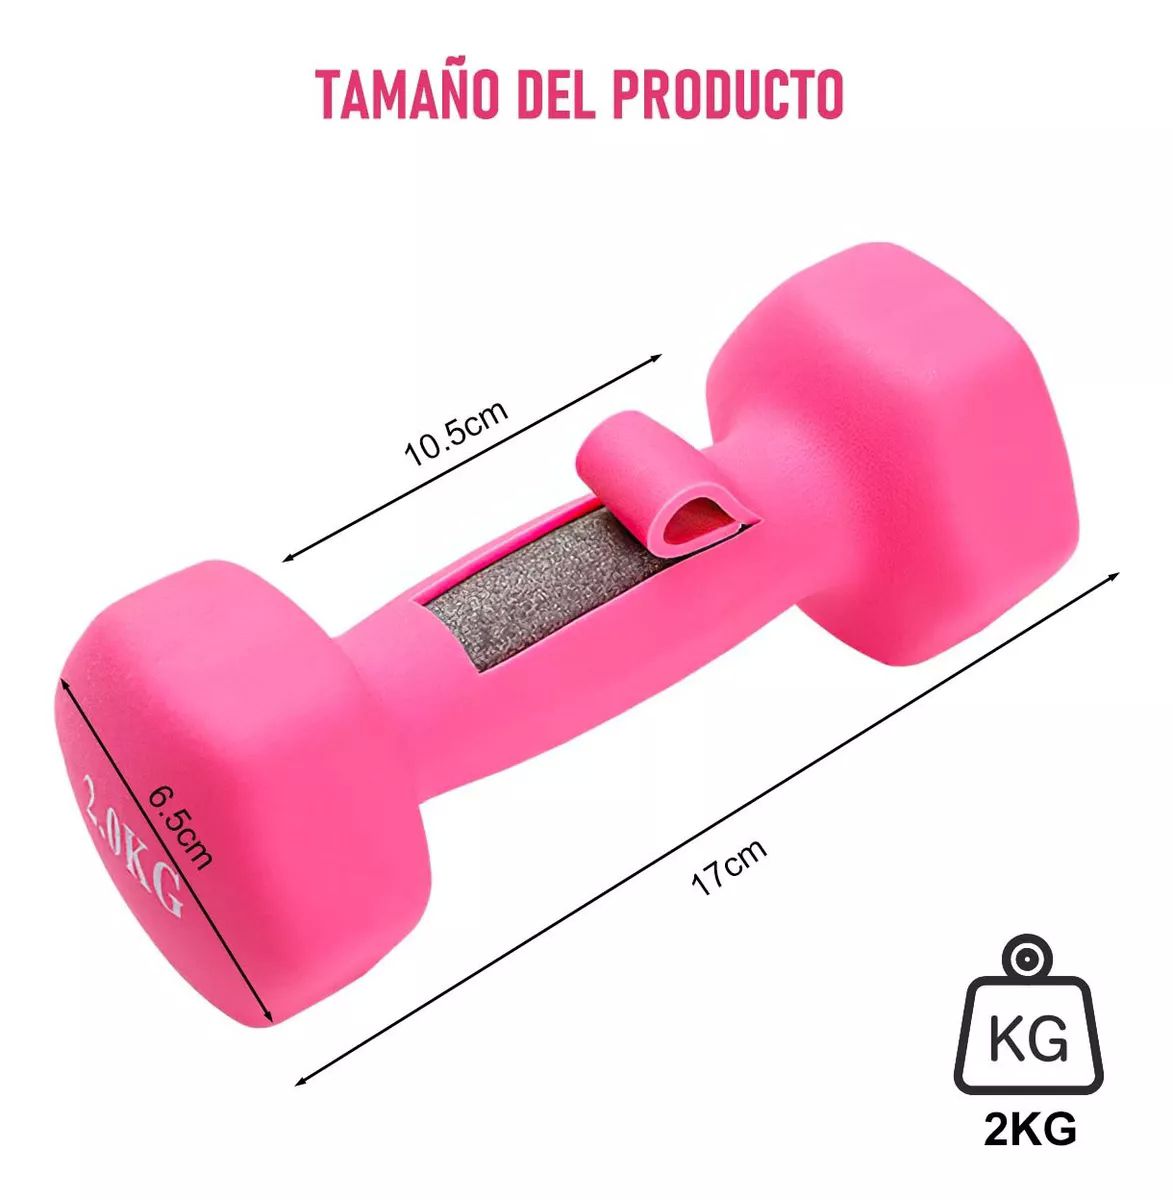 Mancuernas Functional 5Kg - Rosado (Par) - Rudem Fitness Equipment